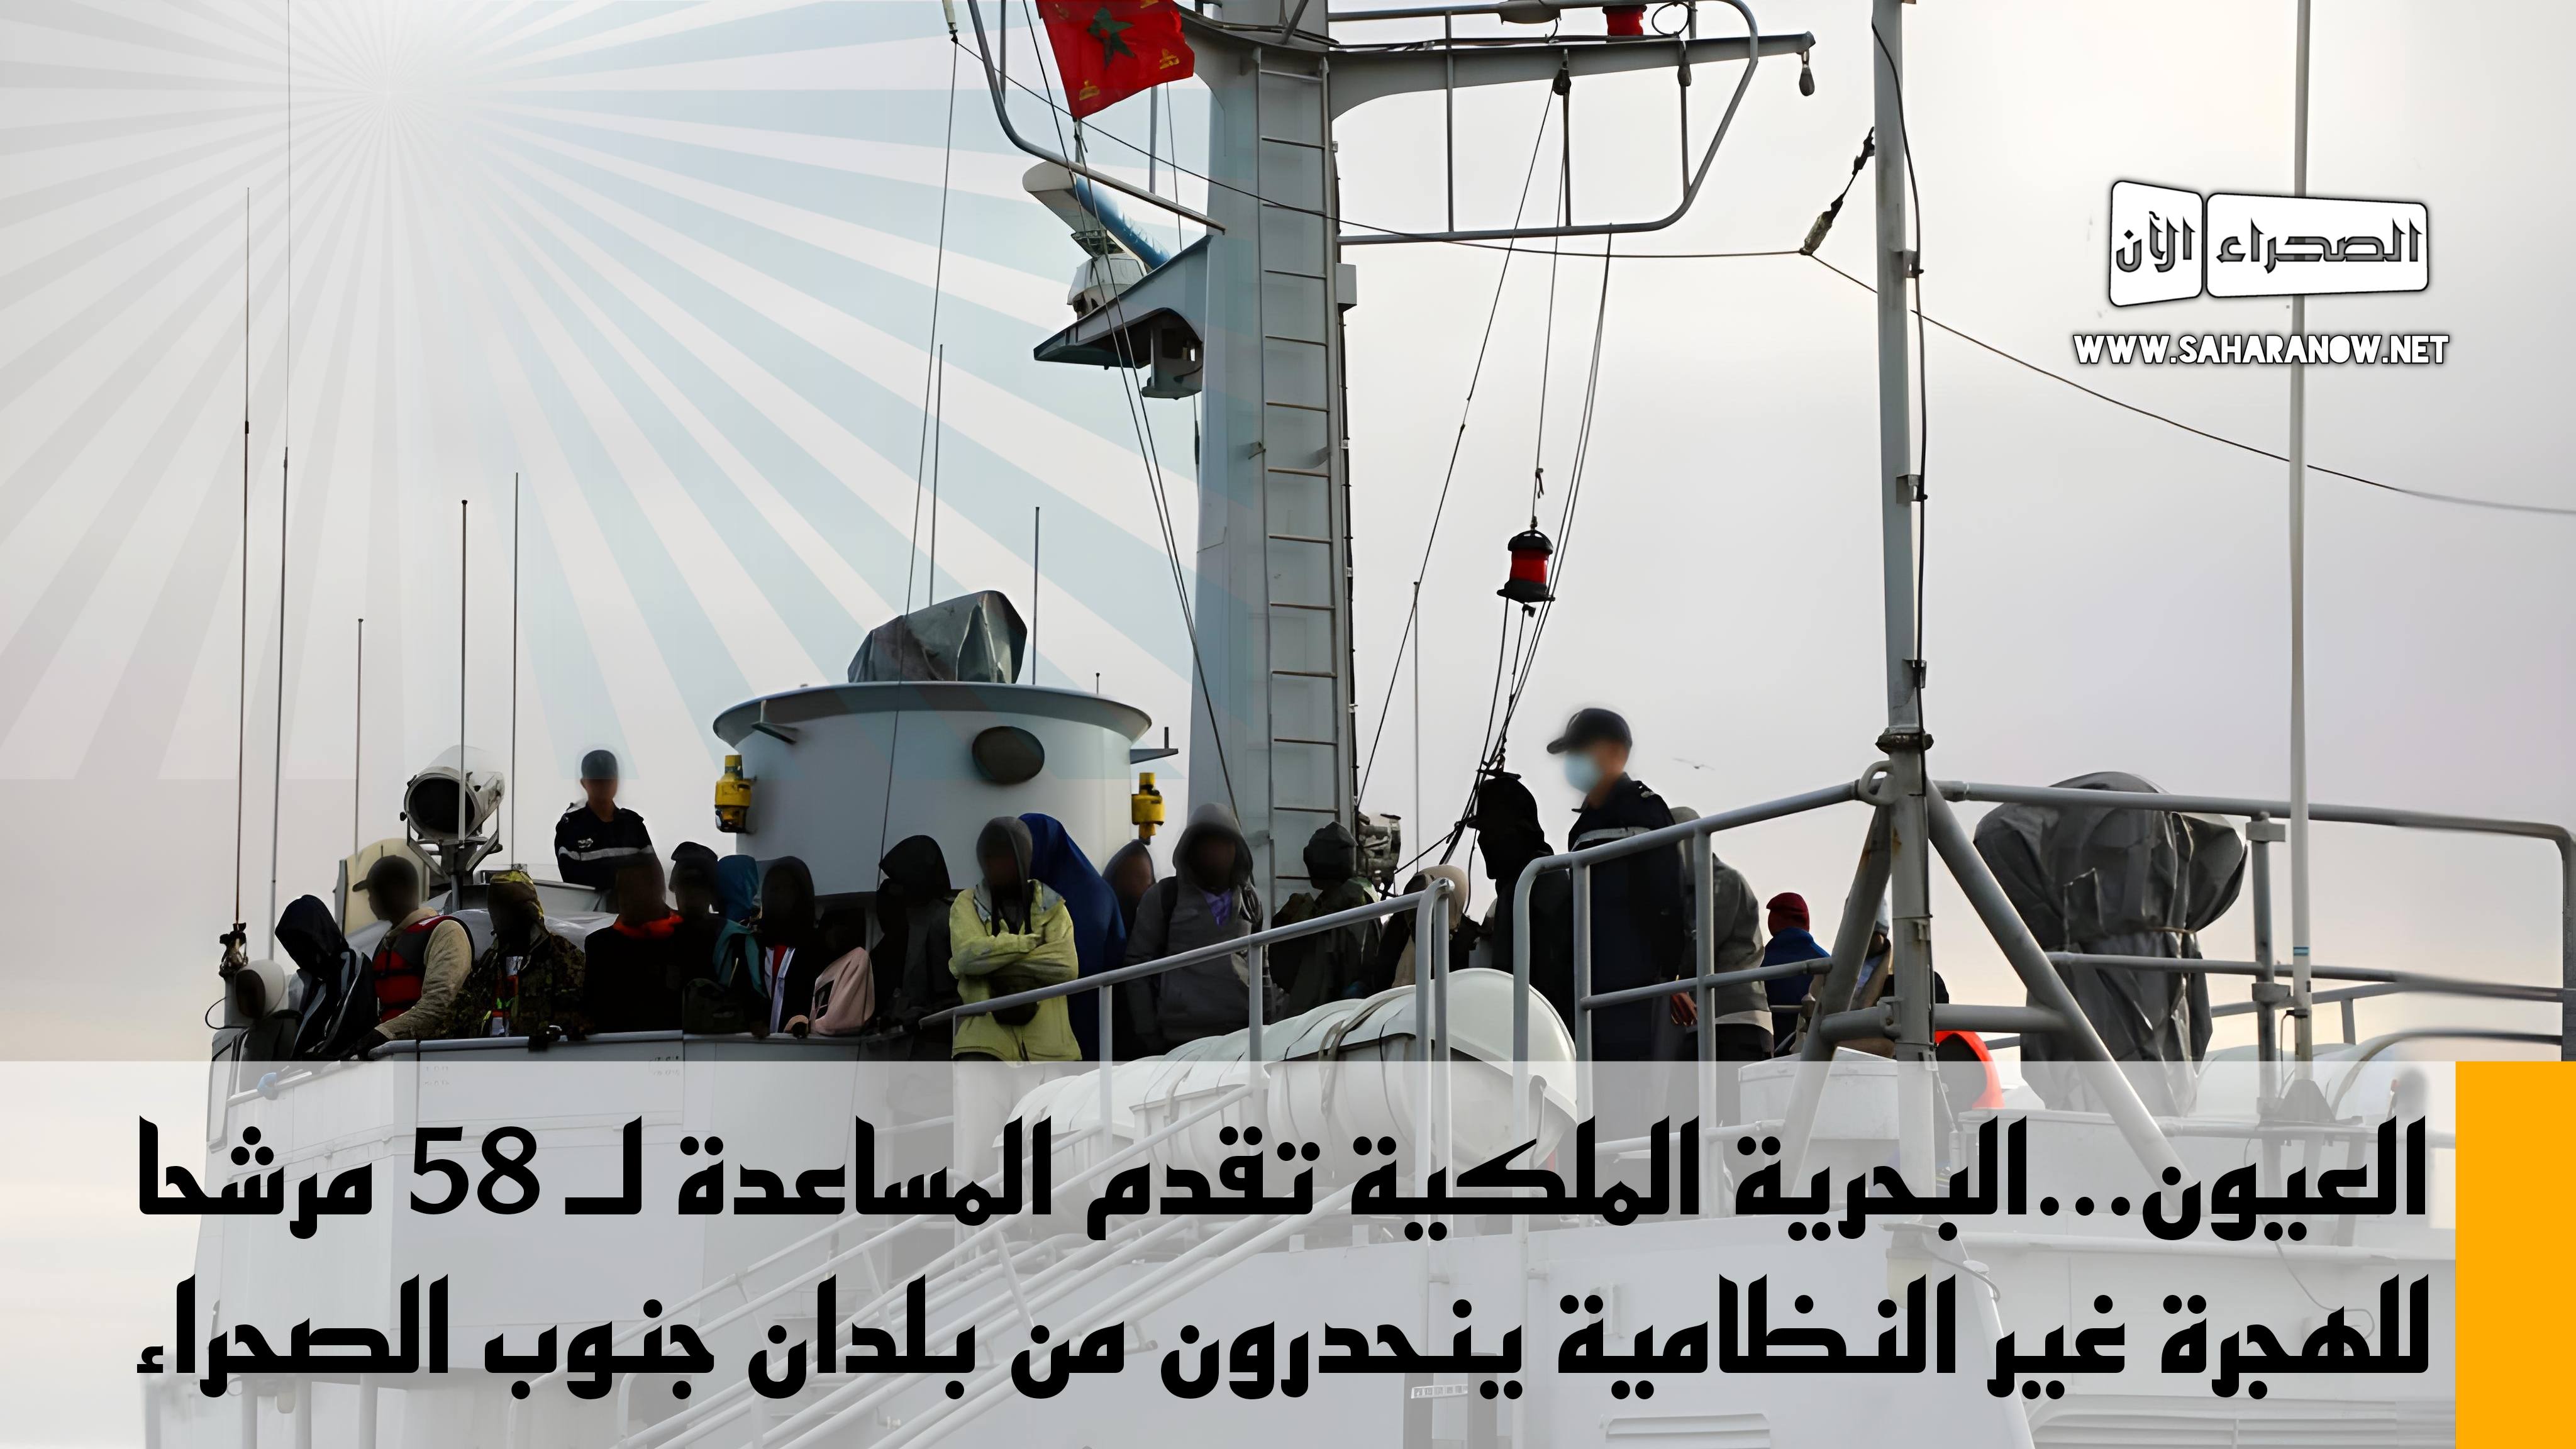 العيون...البحرية الملكية تقدم المساعدة لـ 58 مرشحا للهجرة غير النظامية ينحدرون من بلدان جنوب الصحراء  